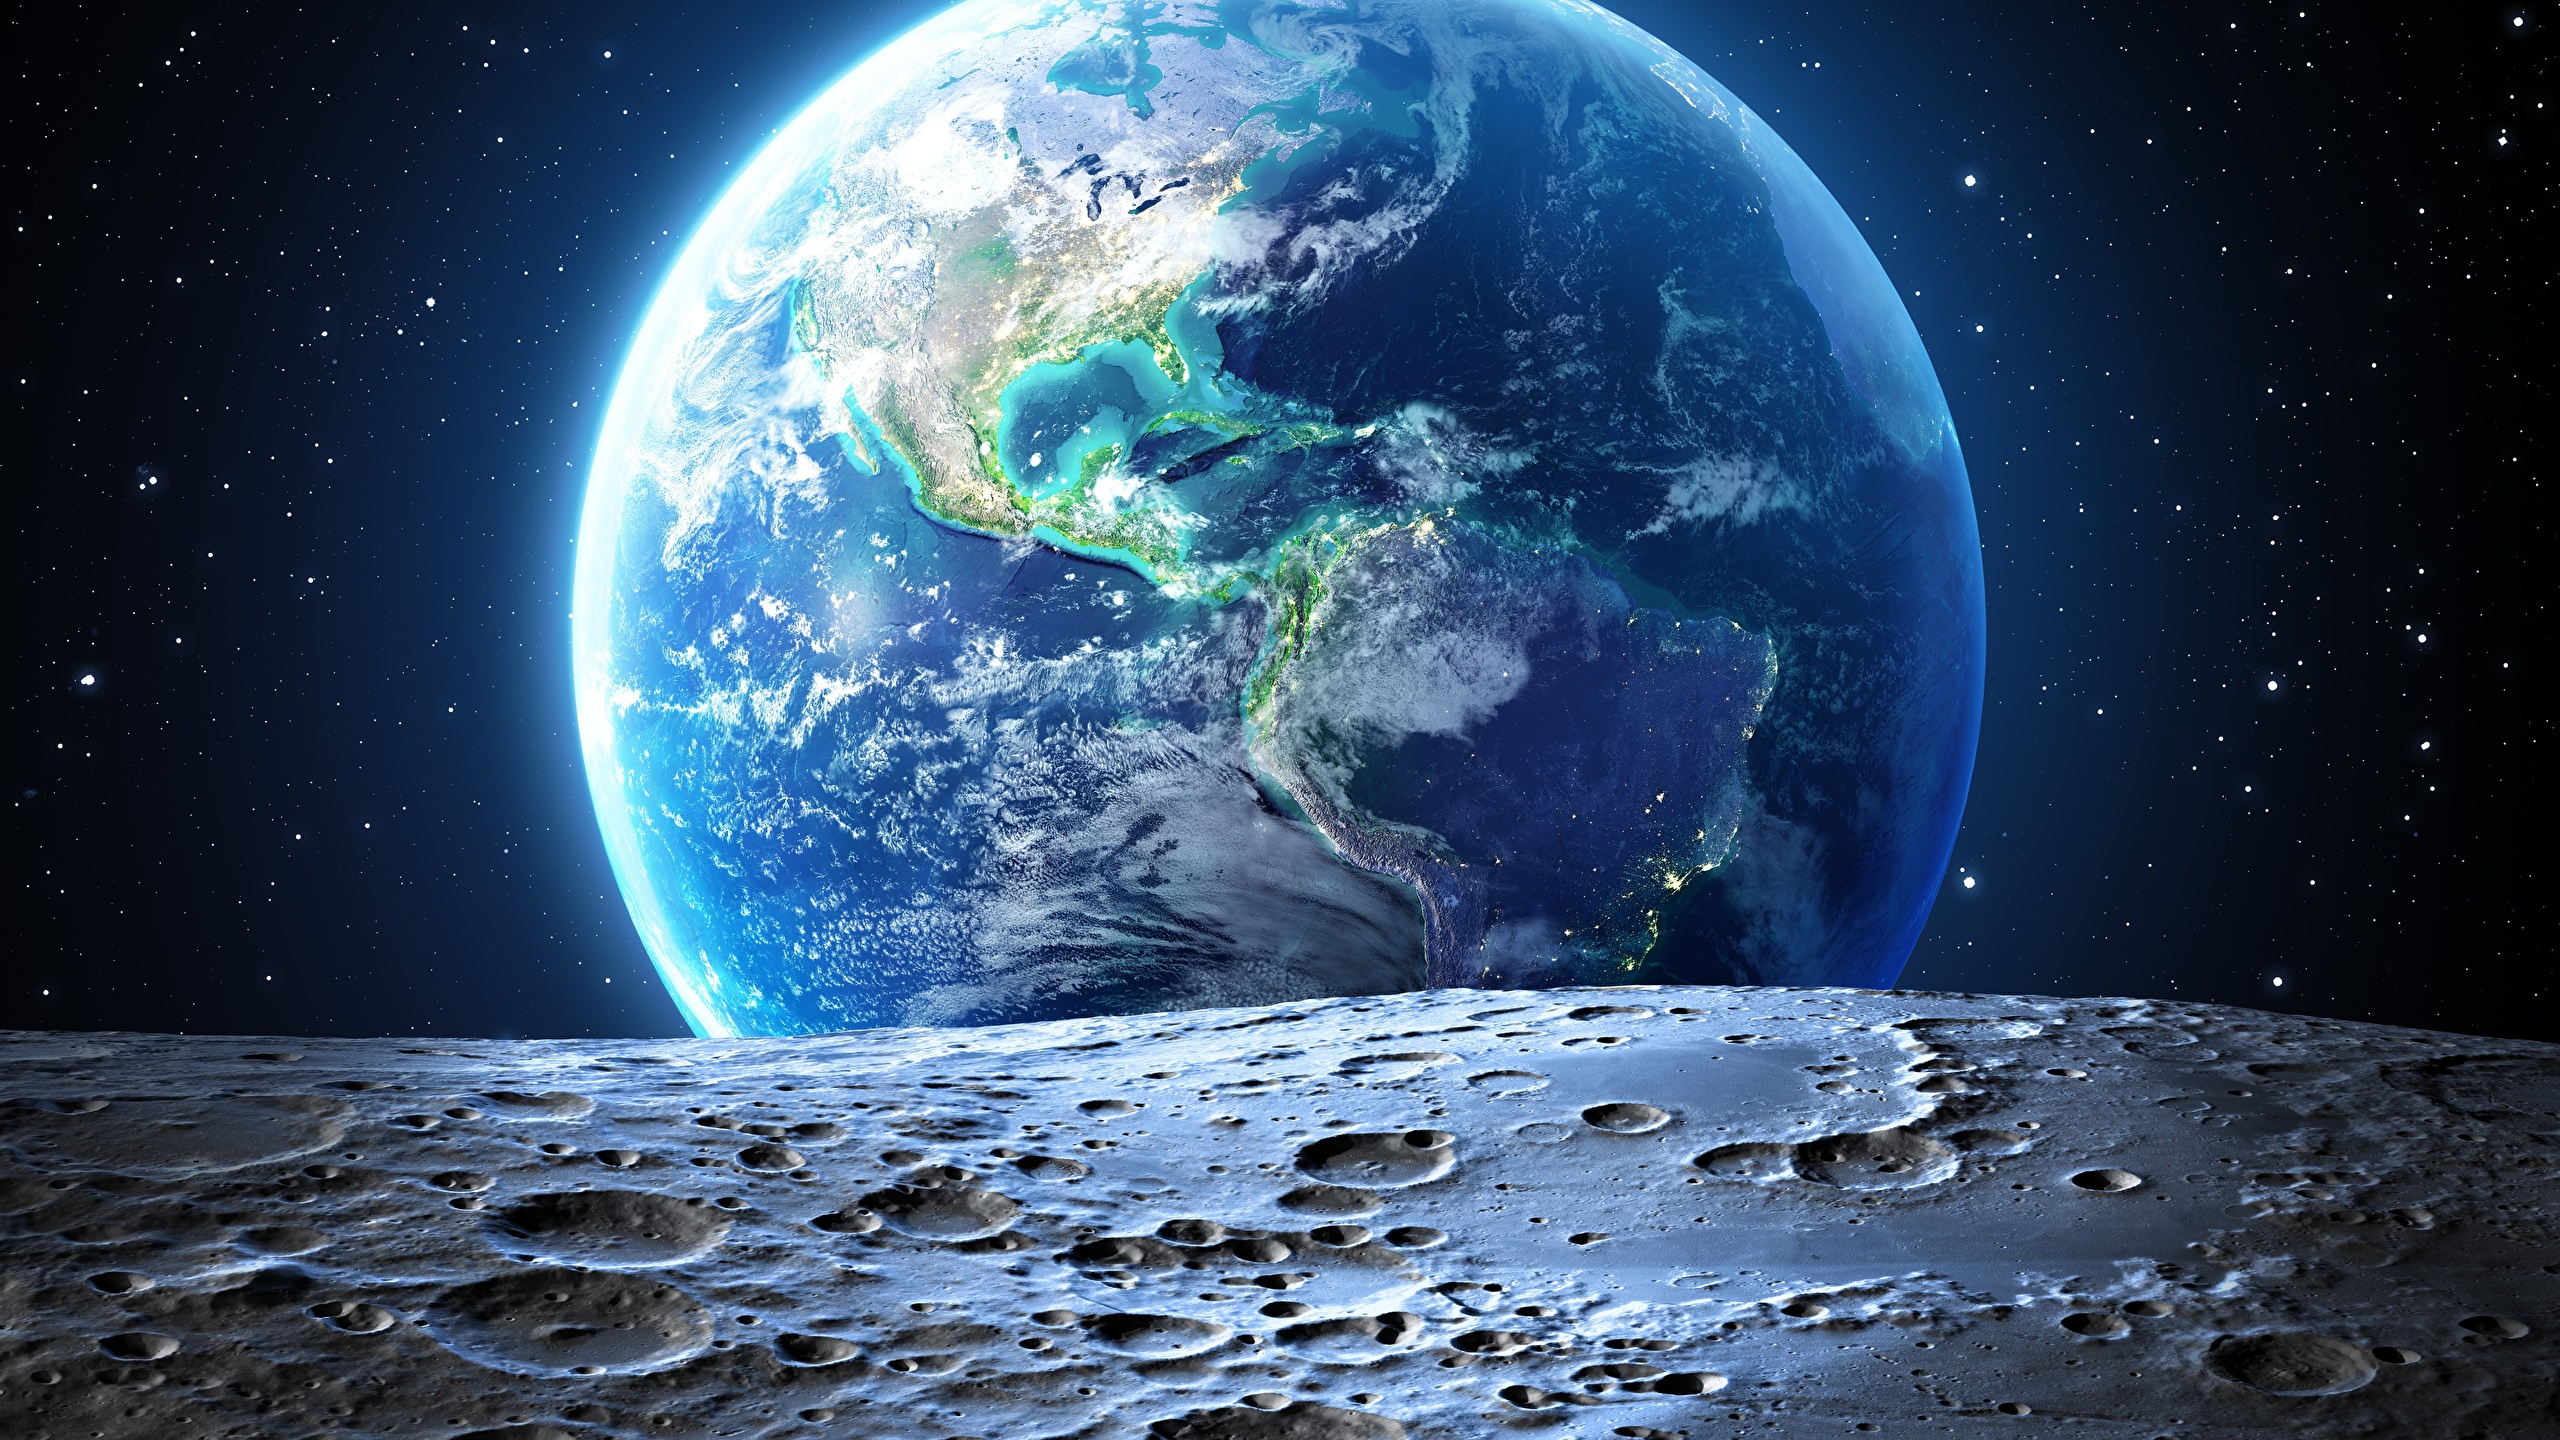 壁紙 2560x1440 地球 月 宇宙空間 ダウンロード 写真